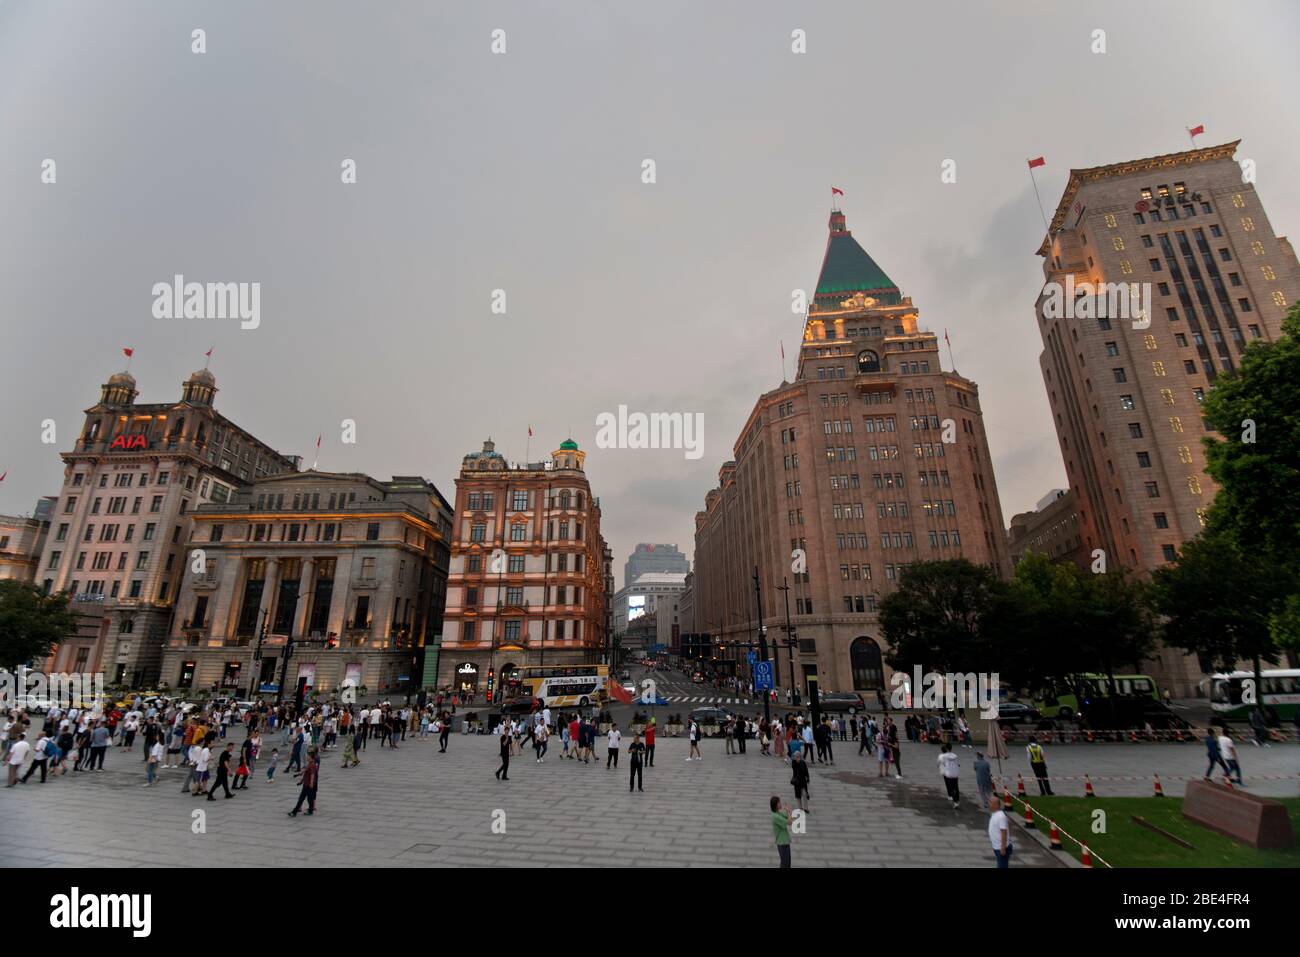 Le Bund, Shanghai: L'hôtel Peace, le bâtiment de la Banque de Chine, et l'ancienne banque Yokohama Specie Bank au crépuscule. Chine Banque D'Images